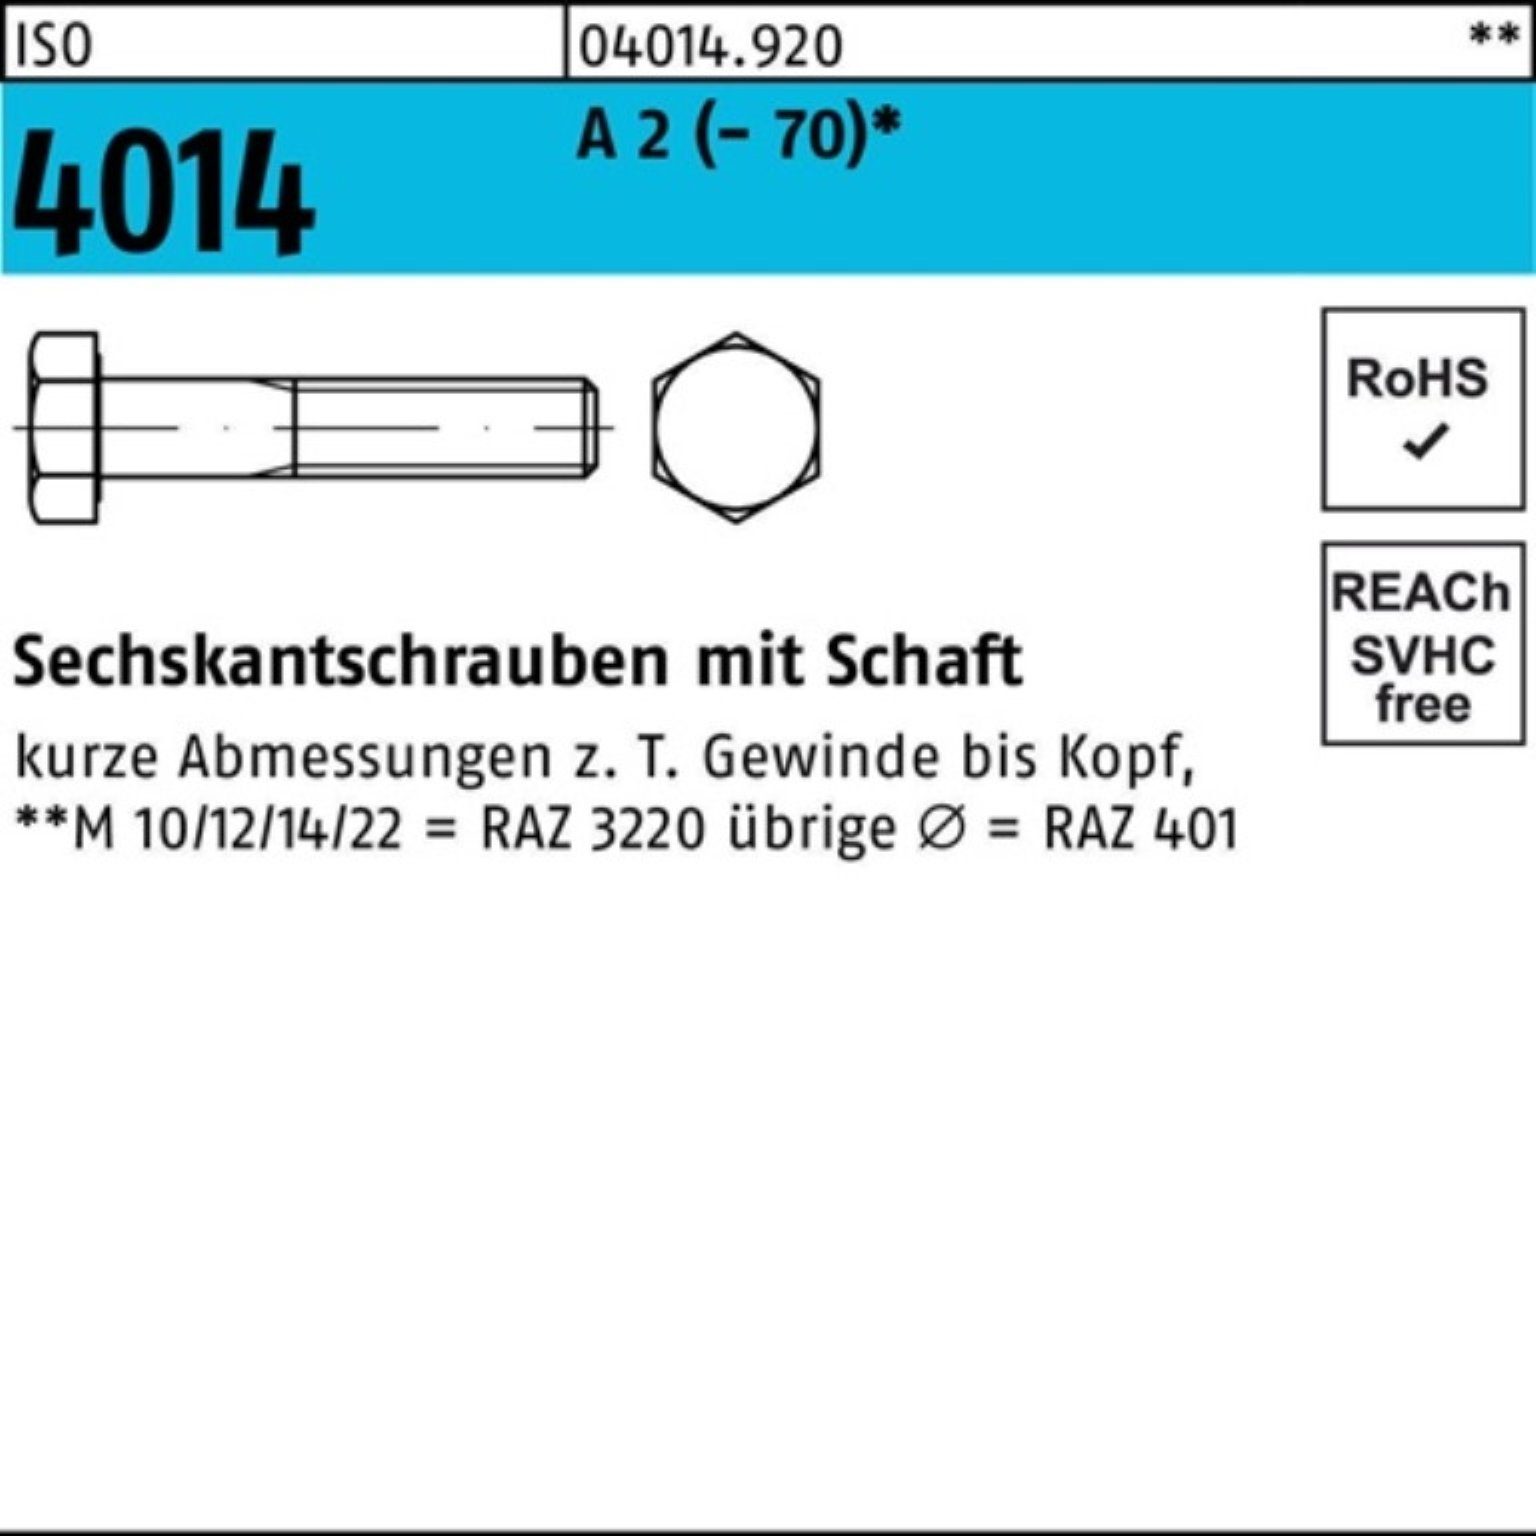 Bufab Sechskantschraube 100er Pack Sechskantschraube ISO 4014 Schaft M16x 140 A 2 (70) 1 St